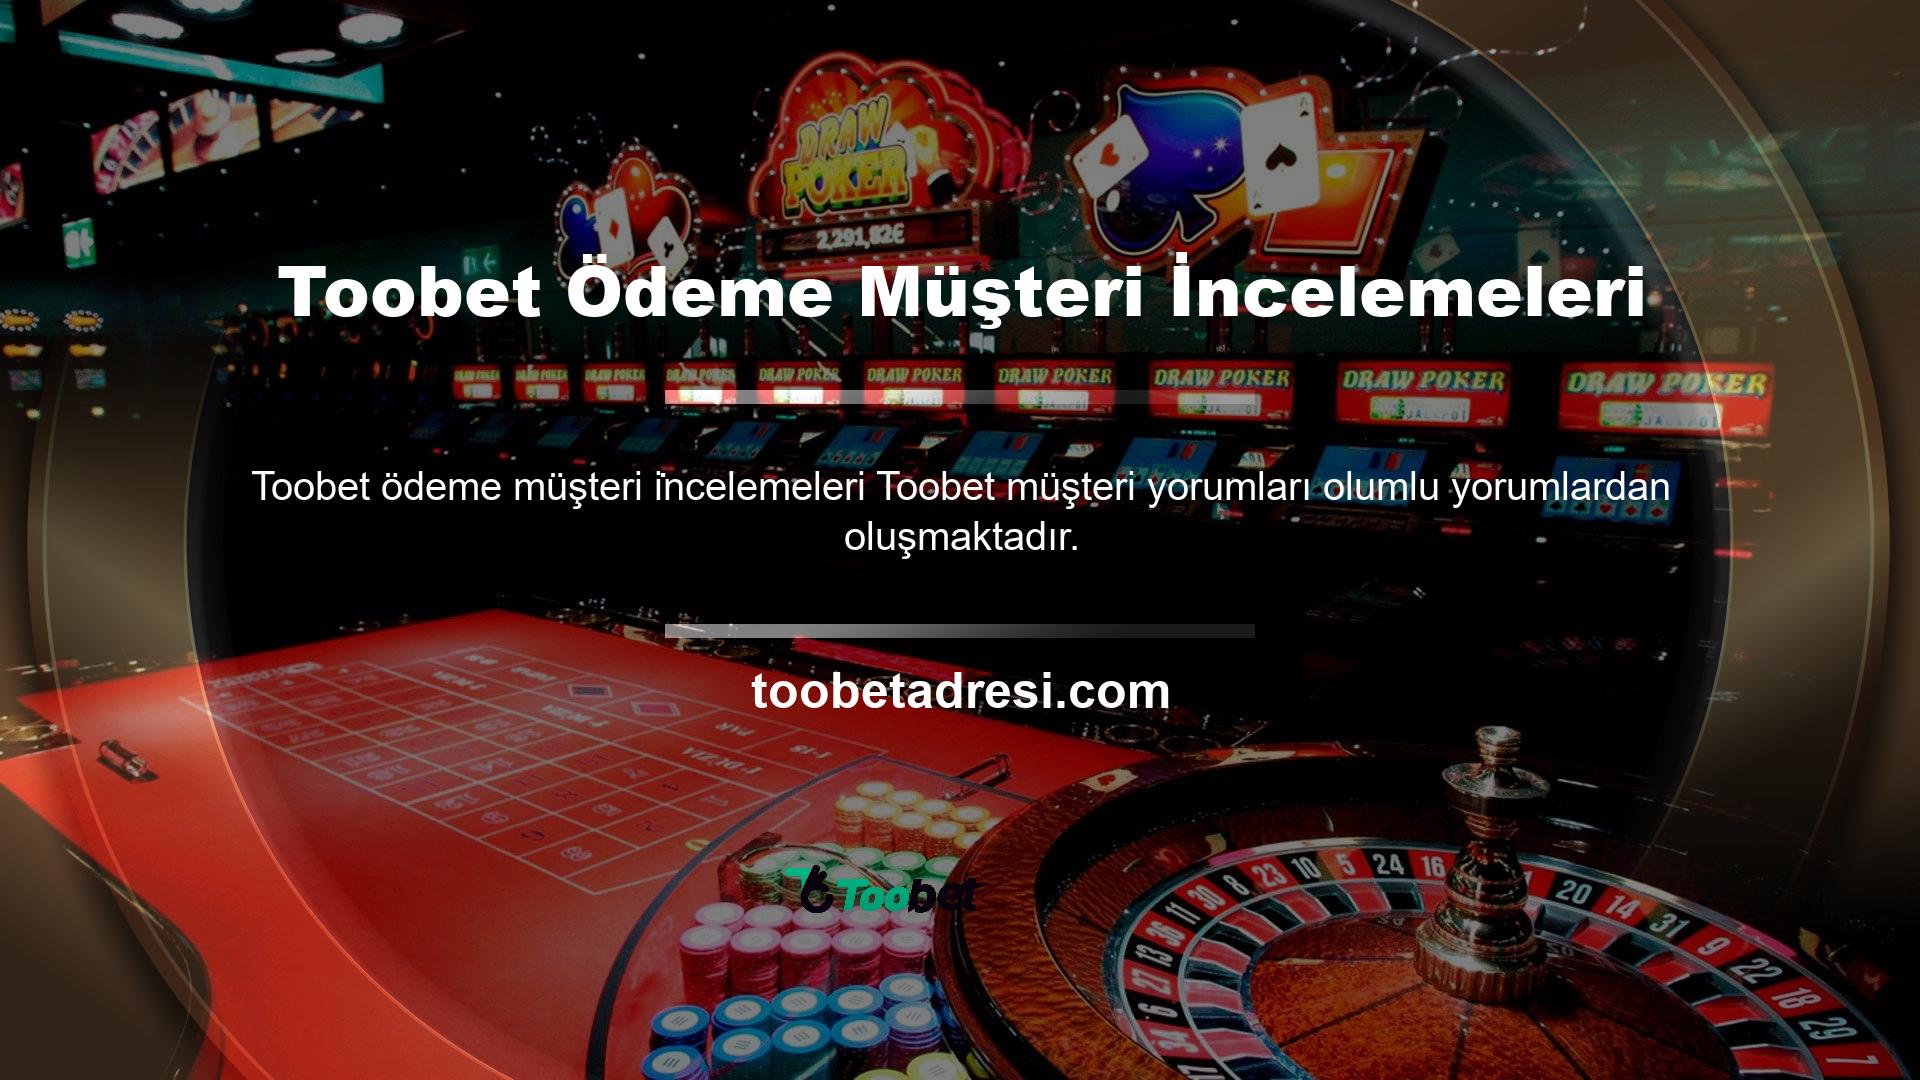 Canlı casino siteleri arasında belki de en fazla bonusu ve tutarı sunan Toobet yasa dışı casino sitesi, casino meraklıları için en uygun ve kaliteli sitedir